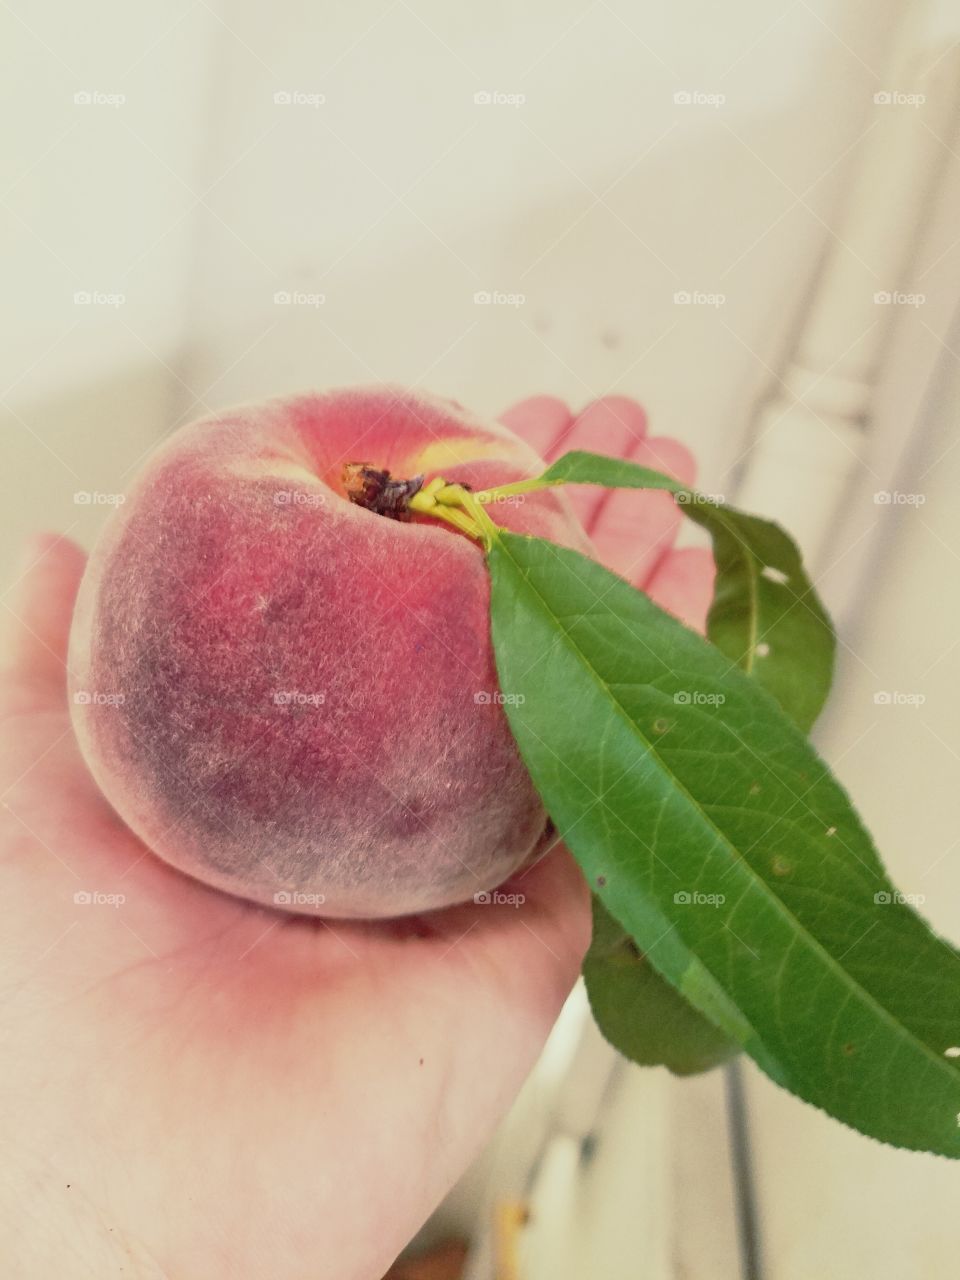 life's a peach......